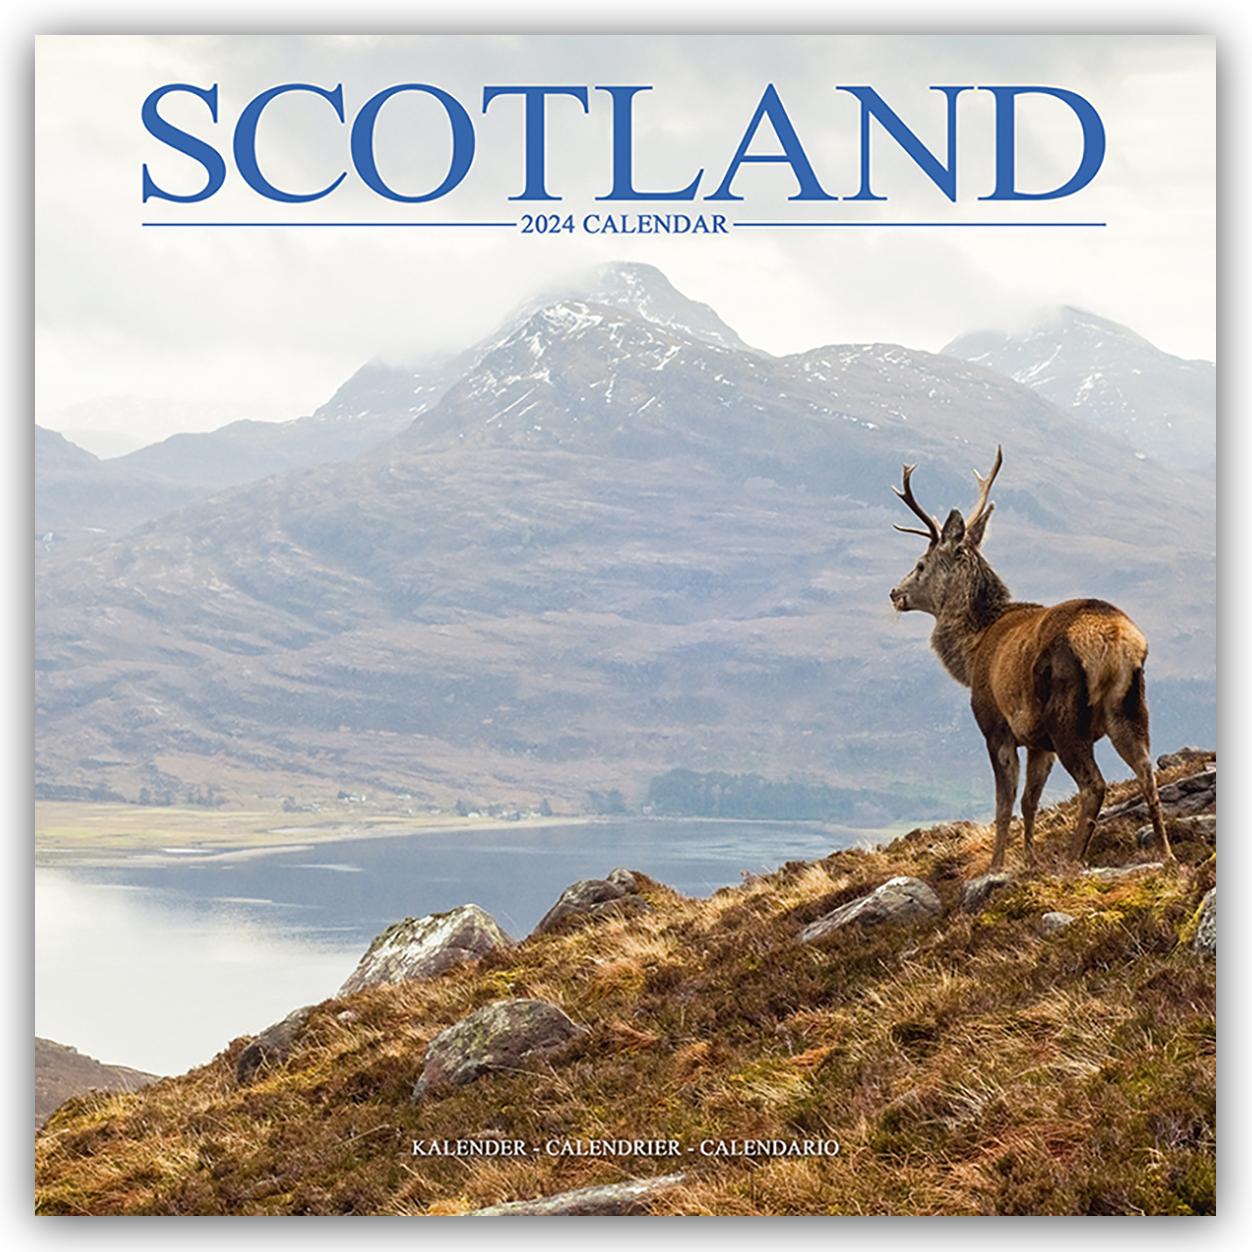 Kalendar/Rokovnik Scotland Calendar 2024  Square Travel Wall Calendar - 16 Month 